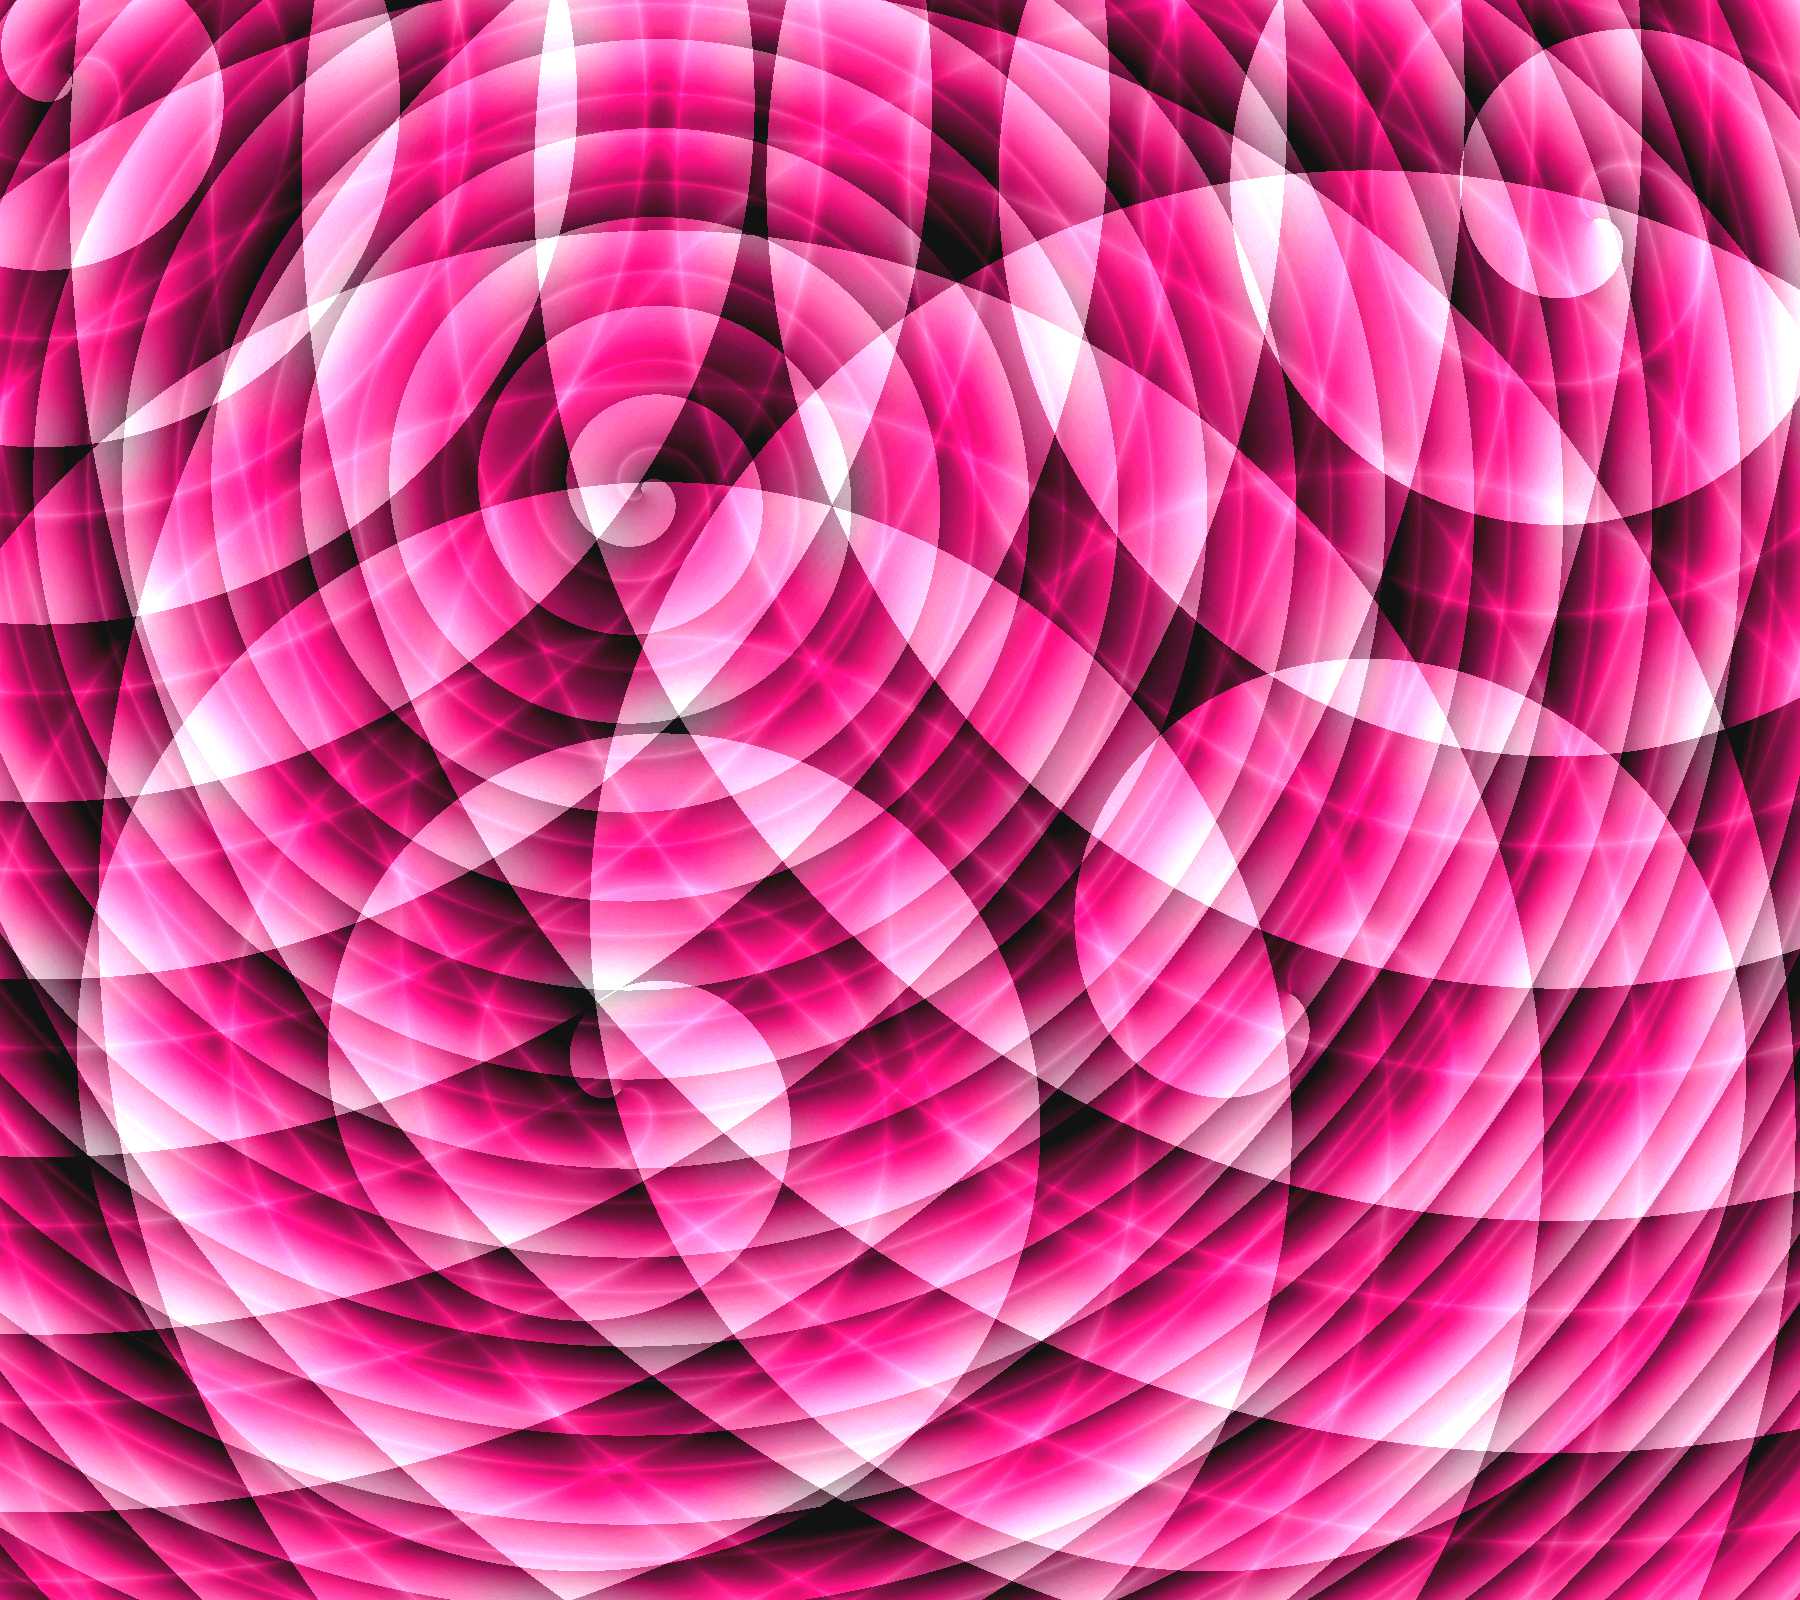 Hot Pink Random Spiral Swirls Background Image